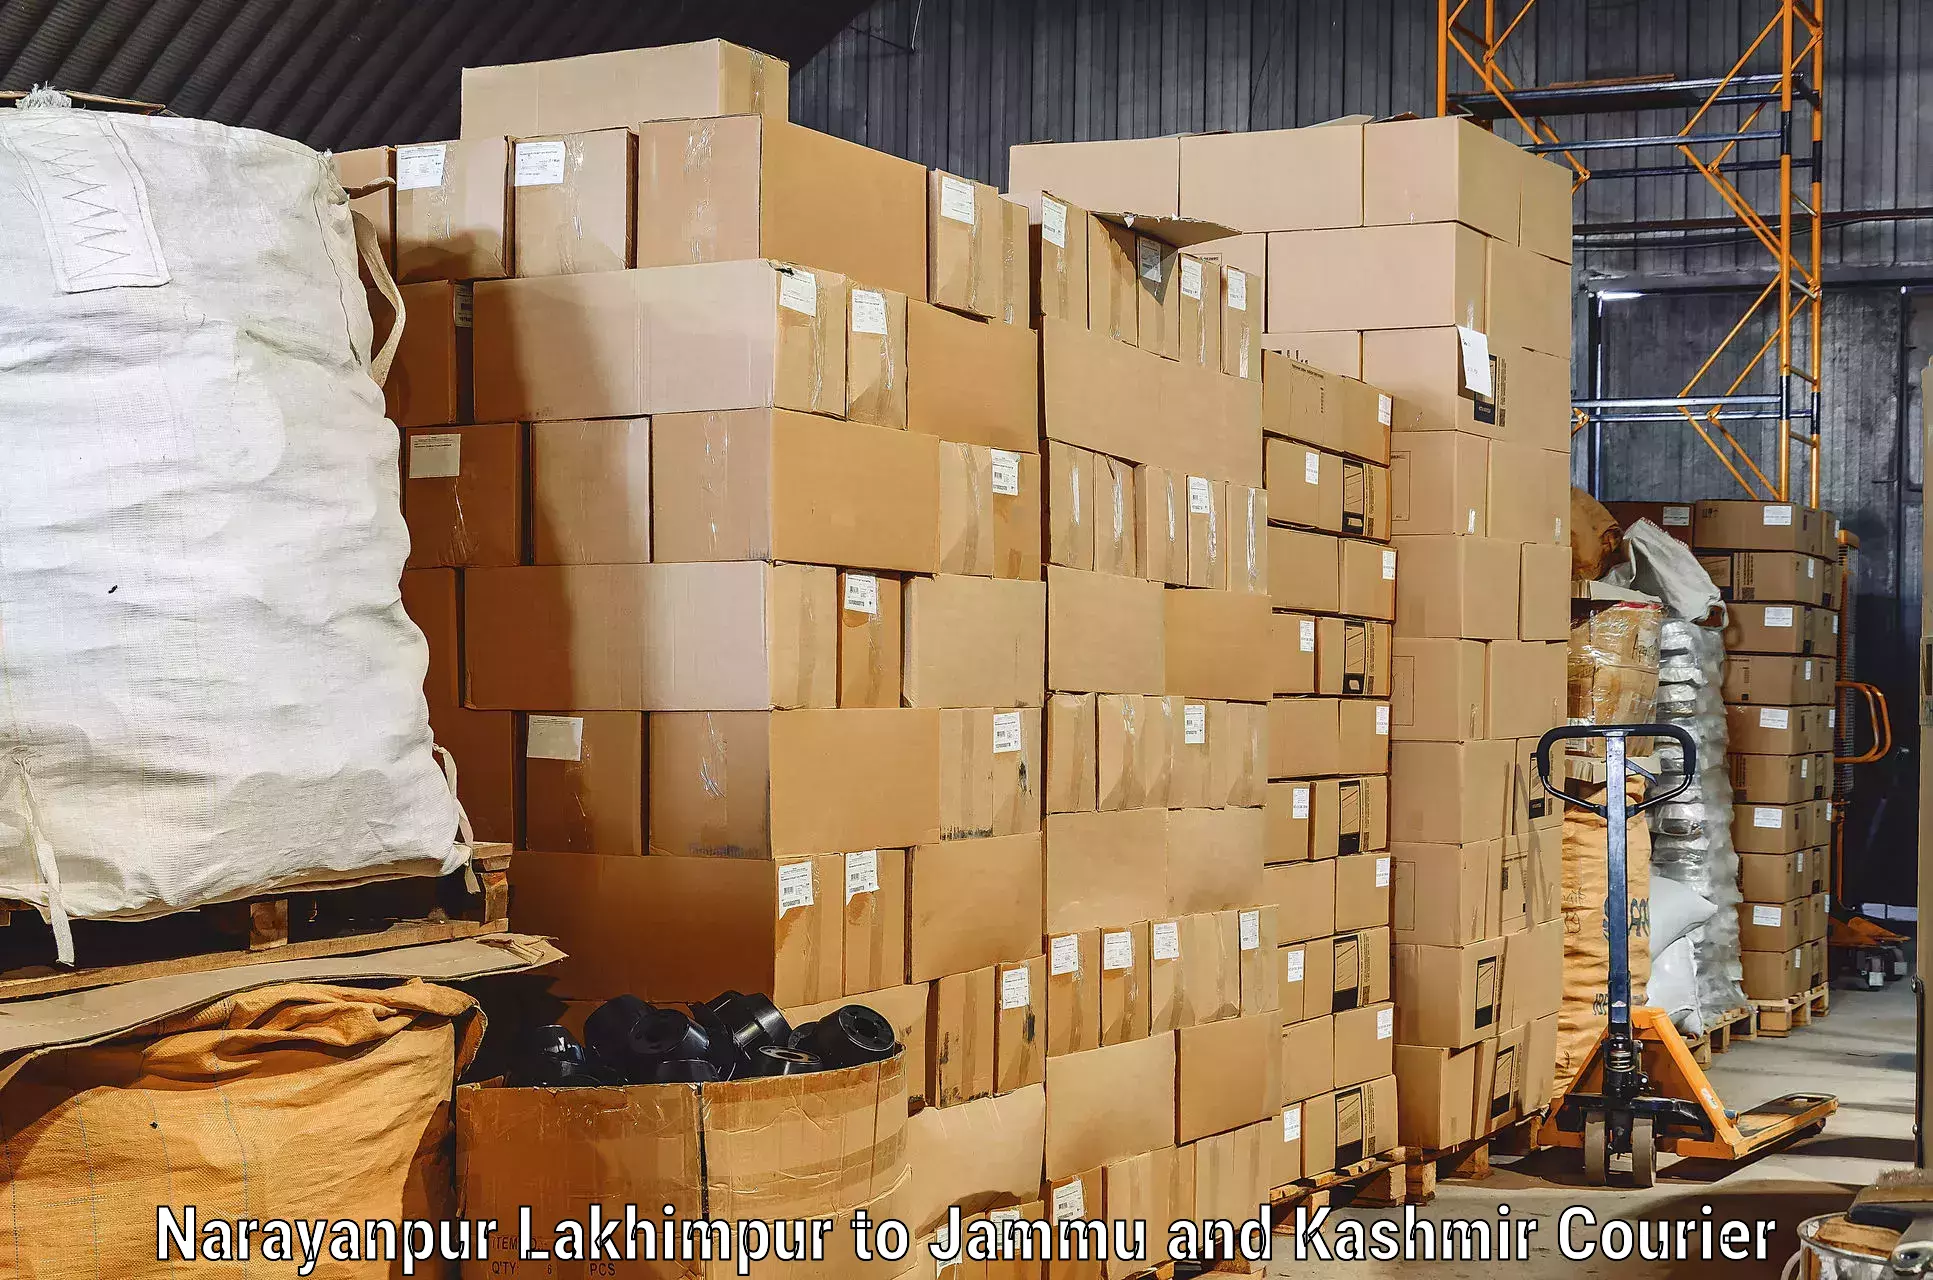 Furniture transport service in Narayanpur Lakhimpur to University of Kashmir Srinagar